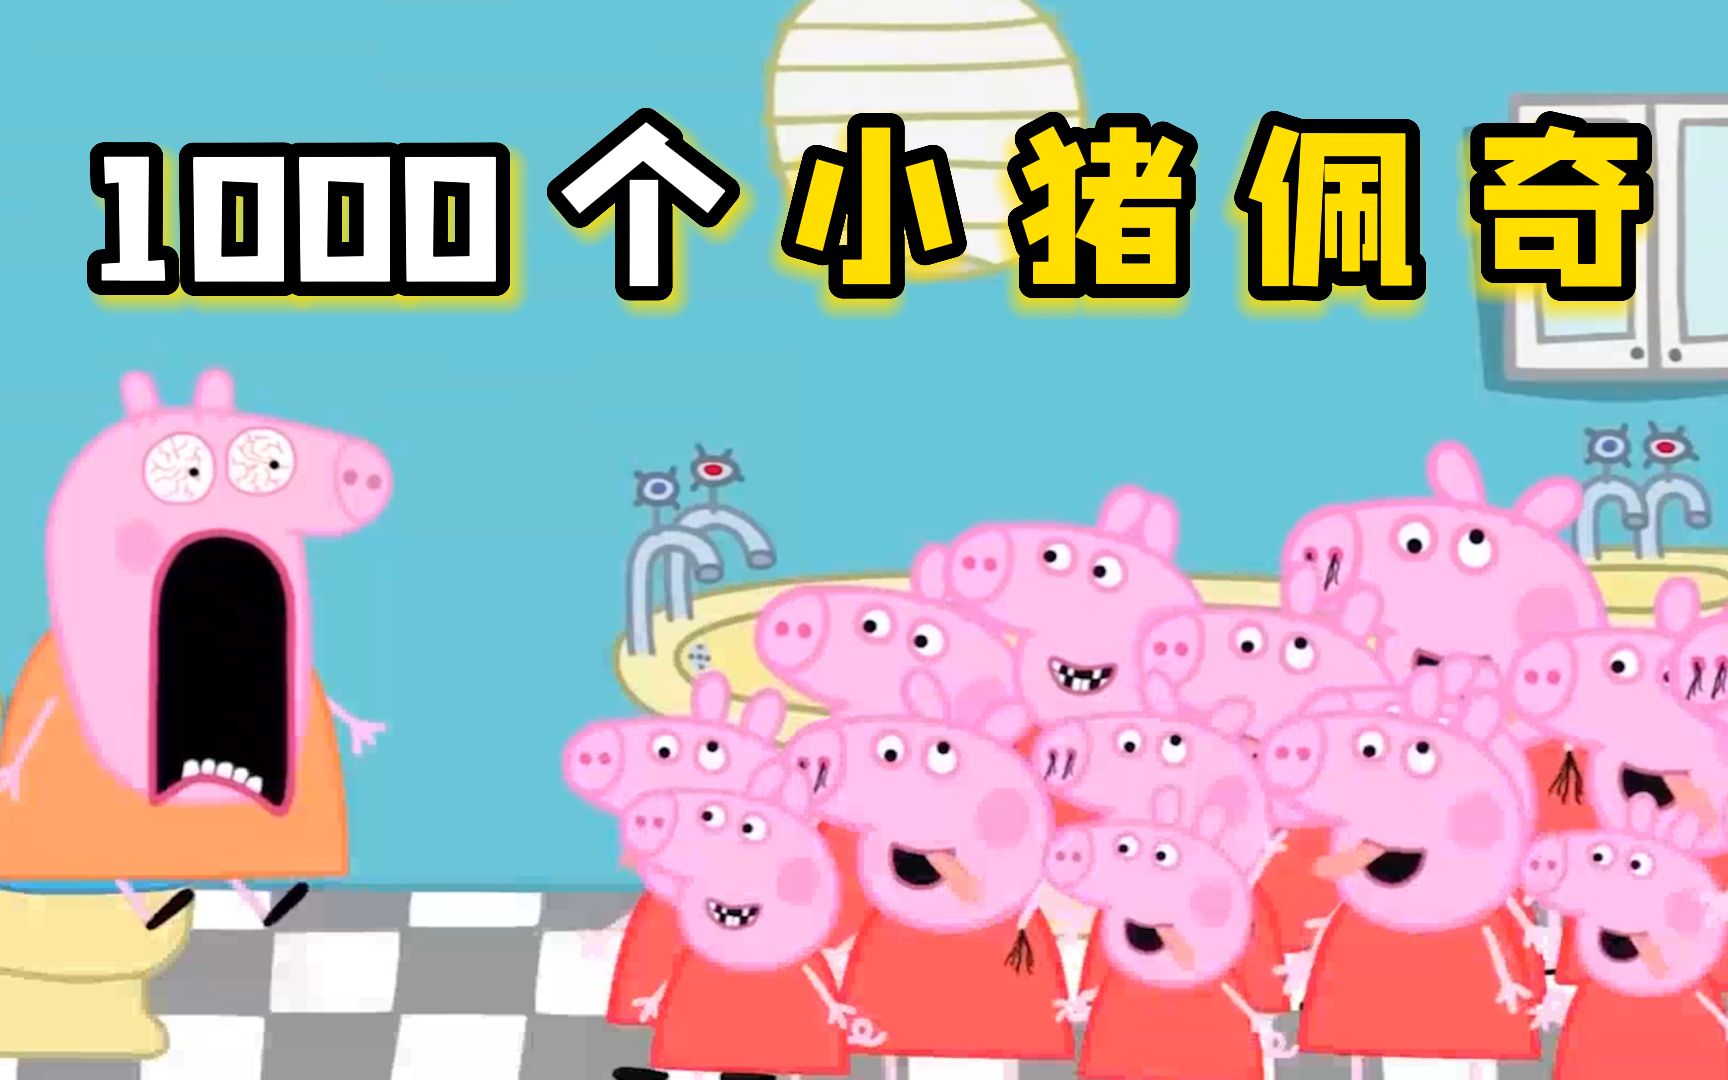 小猪佩奇：1000个小猪佩奇同时出现